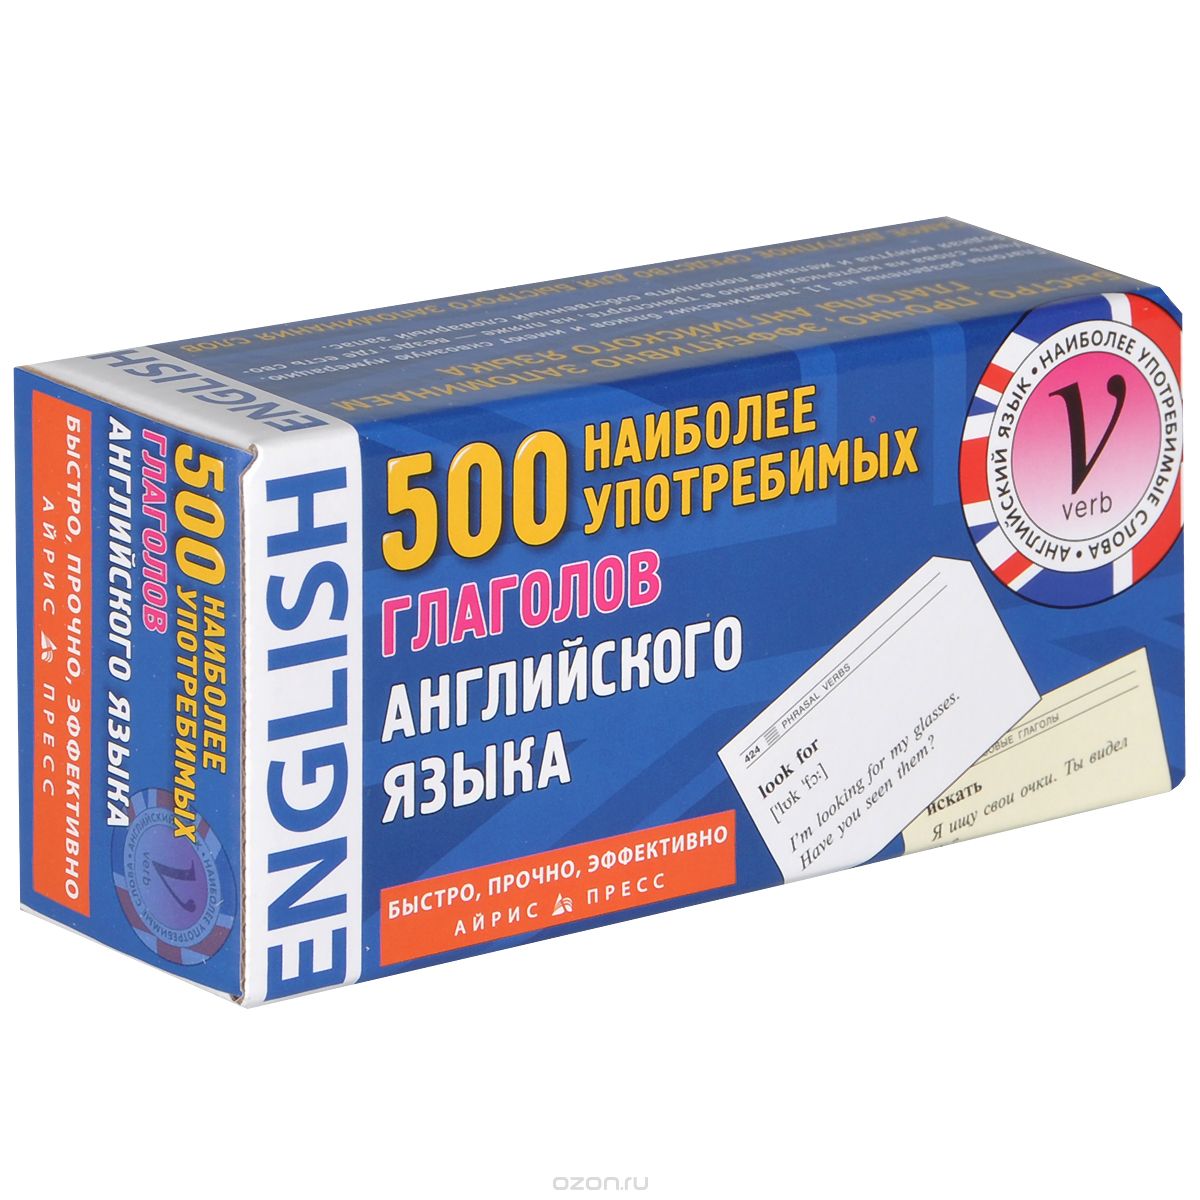 Скачать книгу "500 наиболее употребимых глаголов английского языка (набор из 500 карточек)"